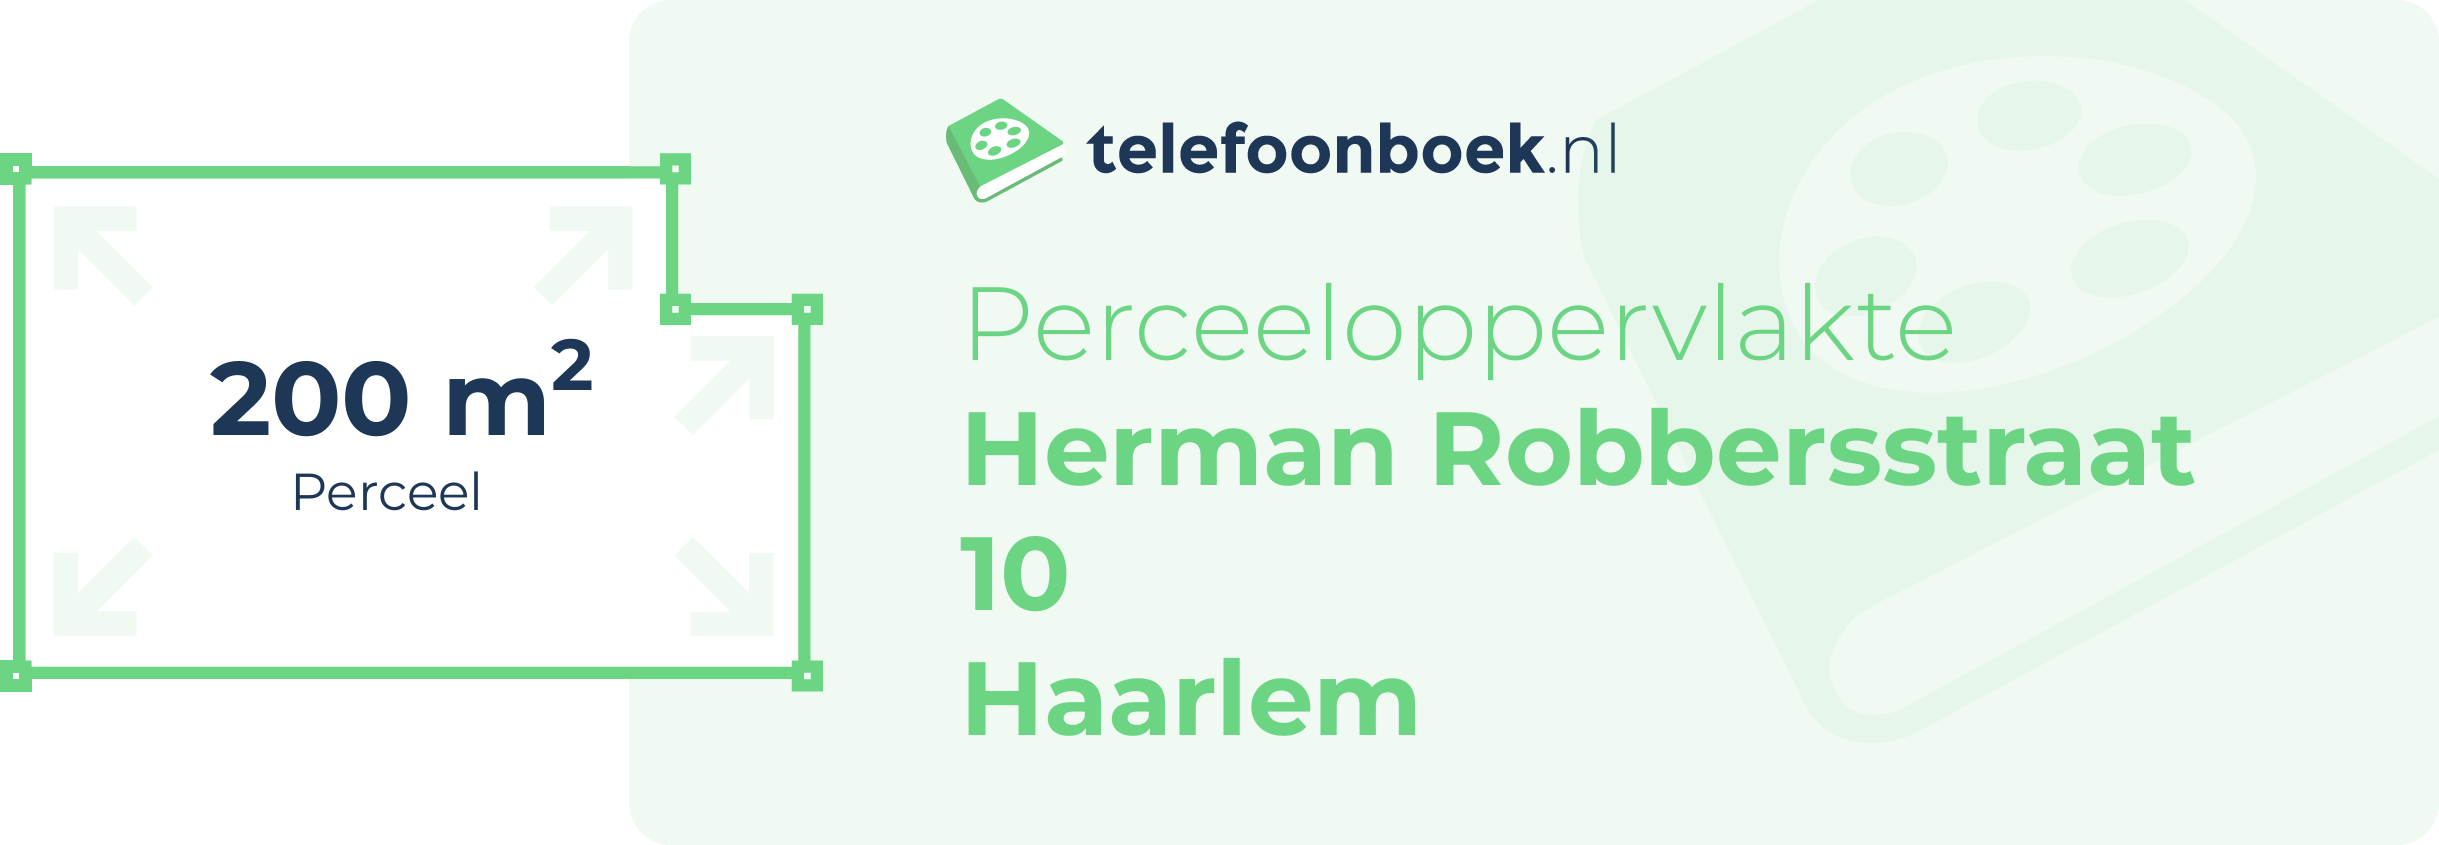 Perceeloppervlakte Herman Robbersstraat 10 Haarlem